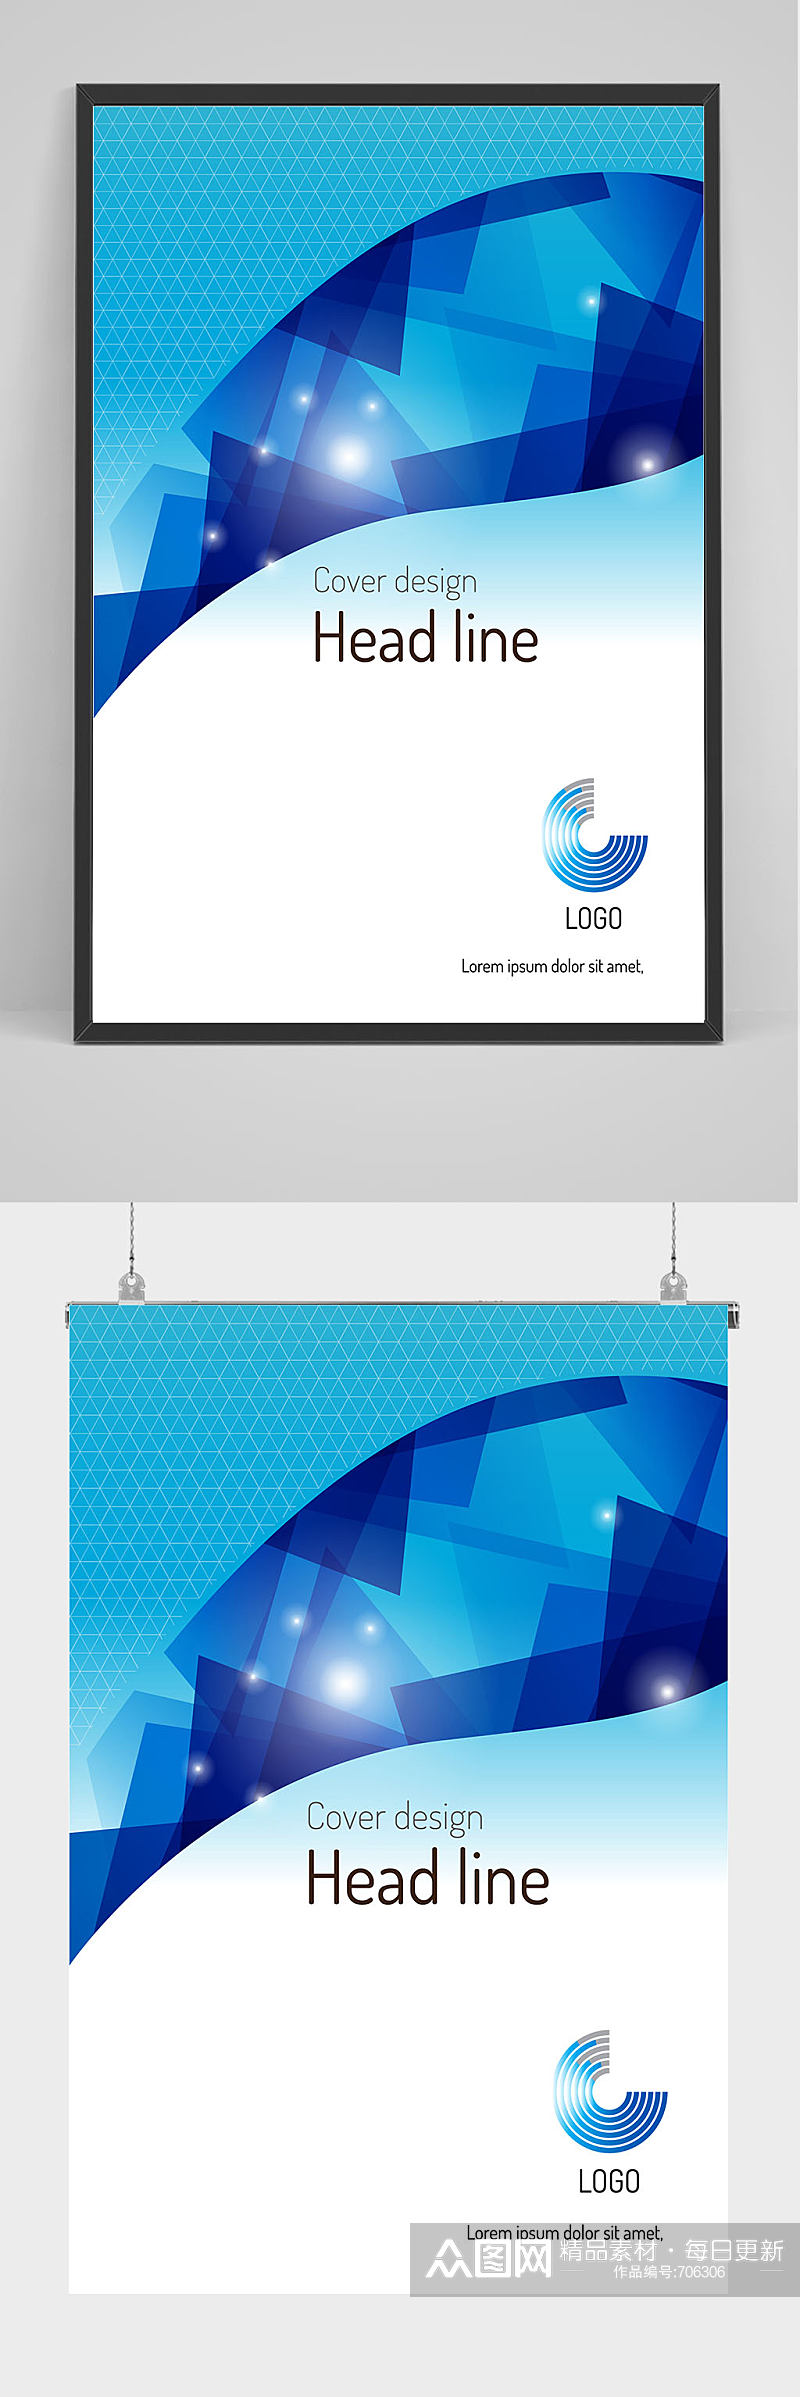 蓝色科技几何图形公司海报设计素材